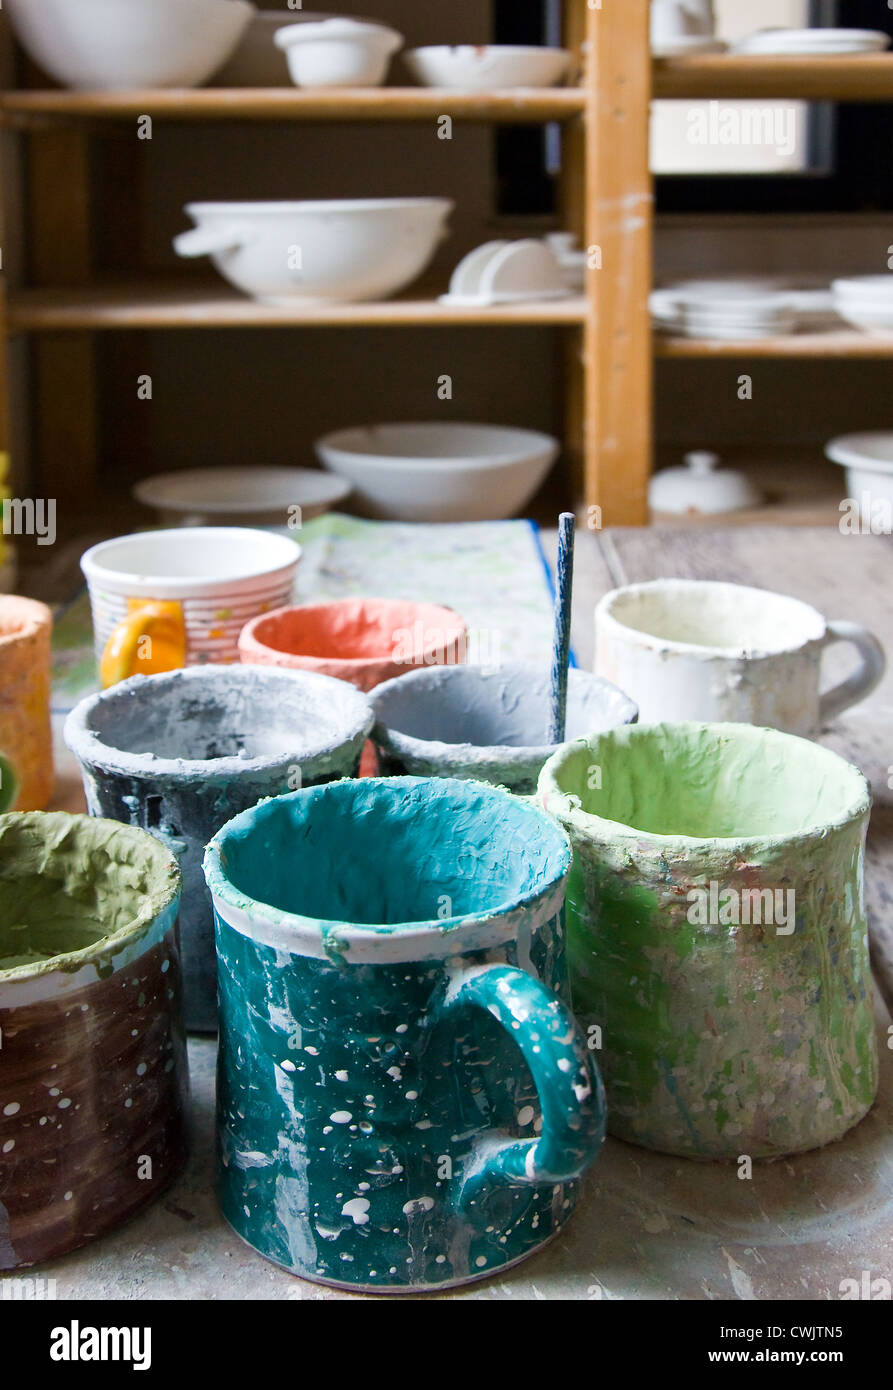 Marizska keramika hi-res stock photography and images - Alamy